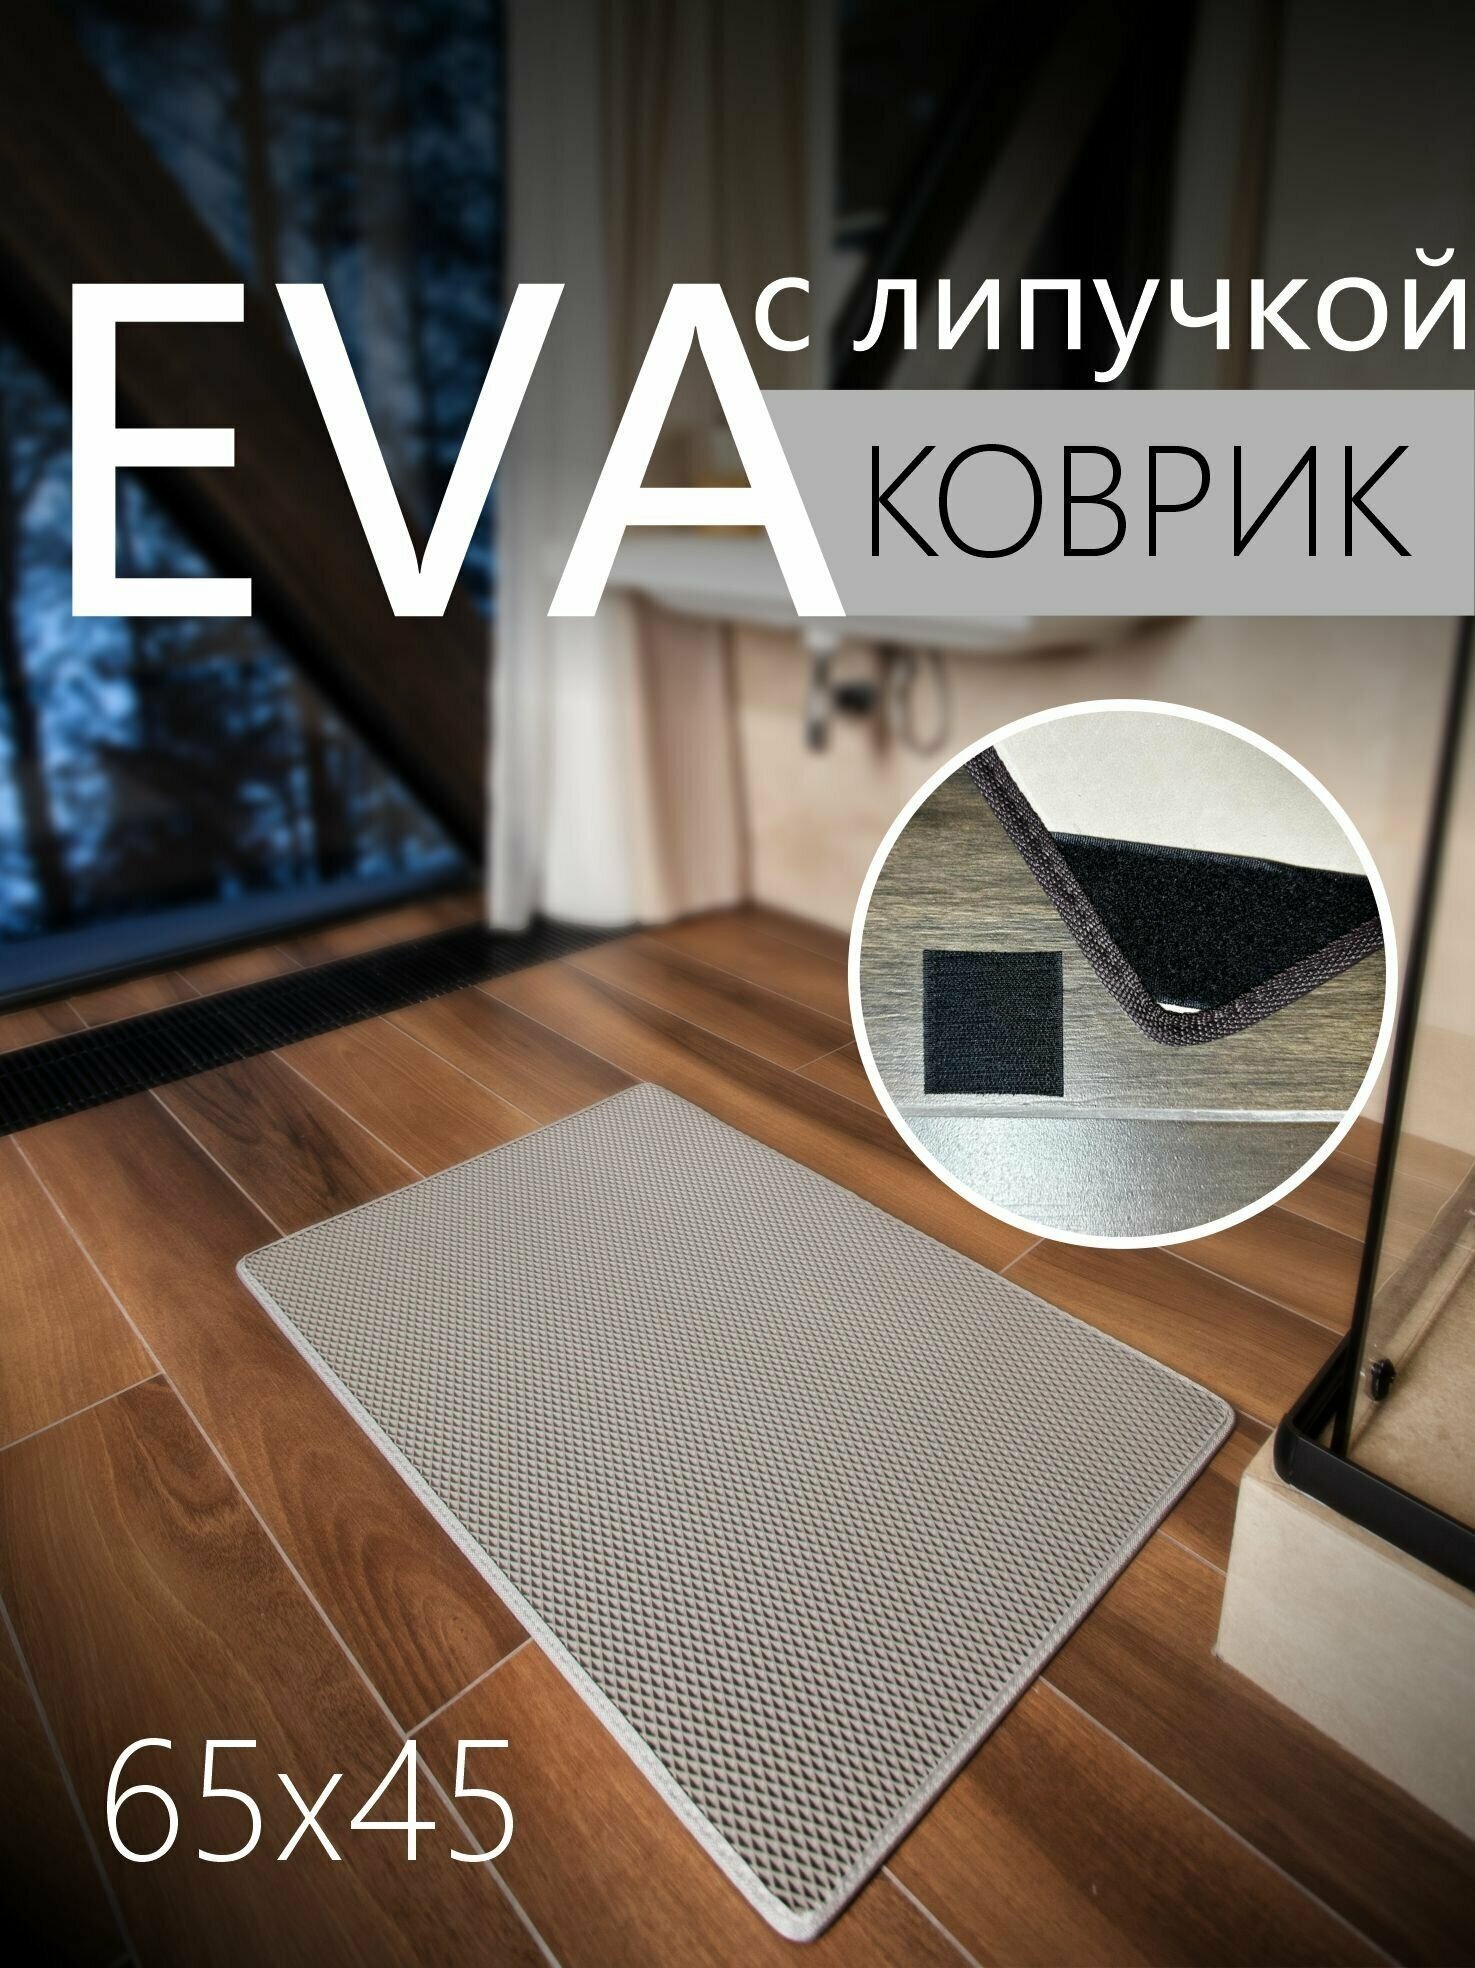 Коврик придверный противоскользящий EVA ЭВА универсальный 65х45 сантиметров. Липучки для фиксации. Ромб Серый со светло-серой окантовкой